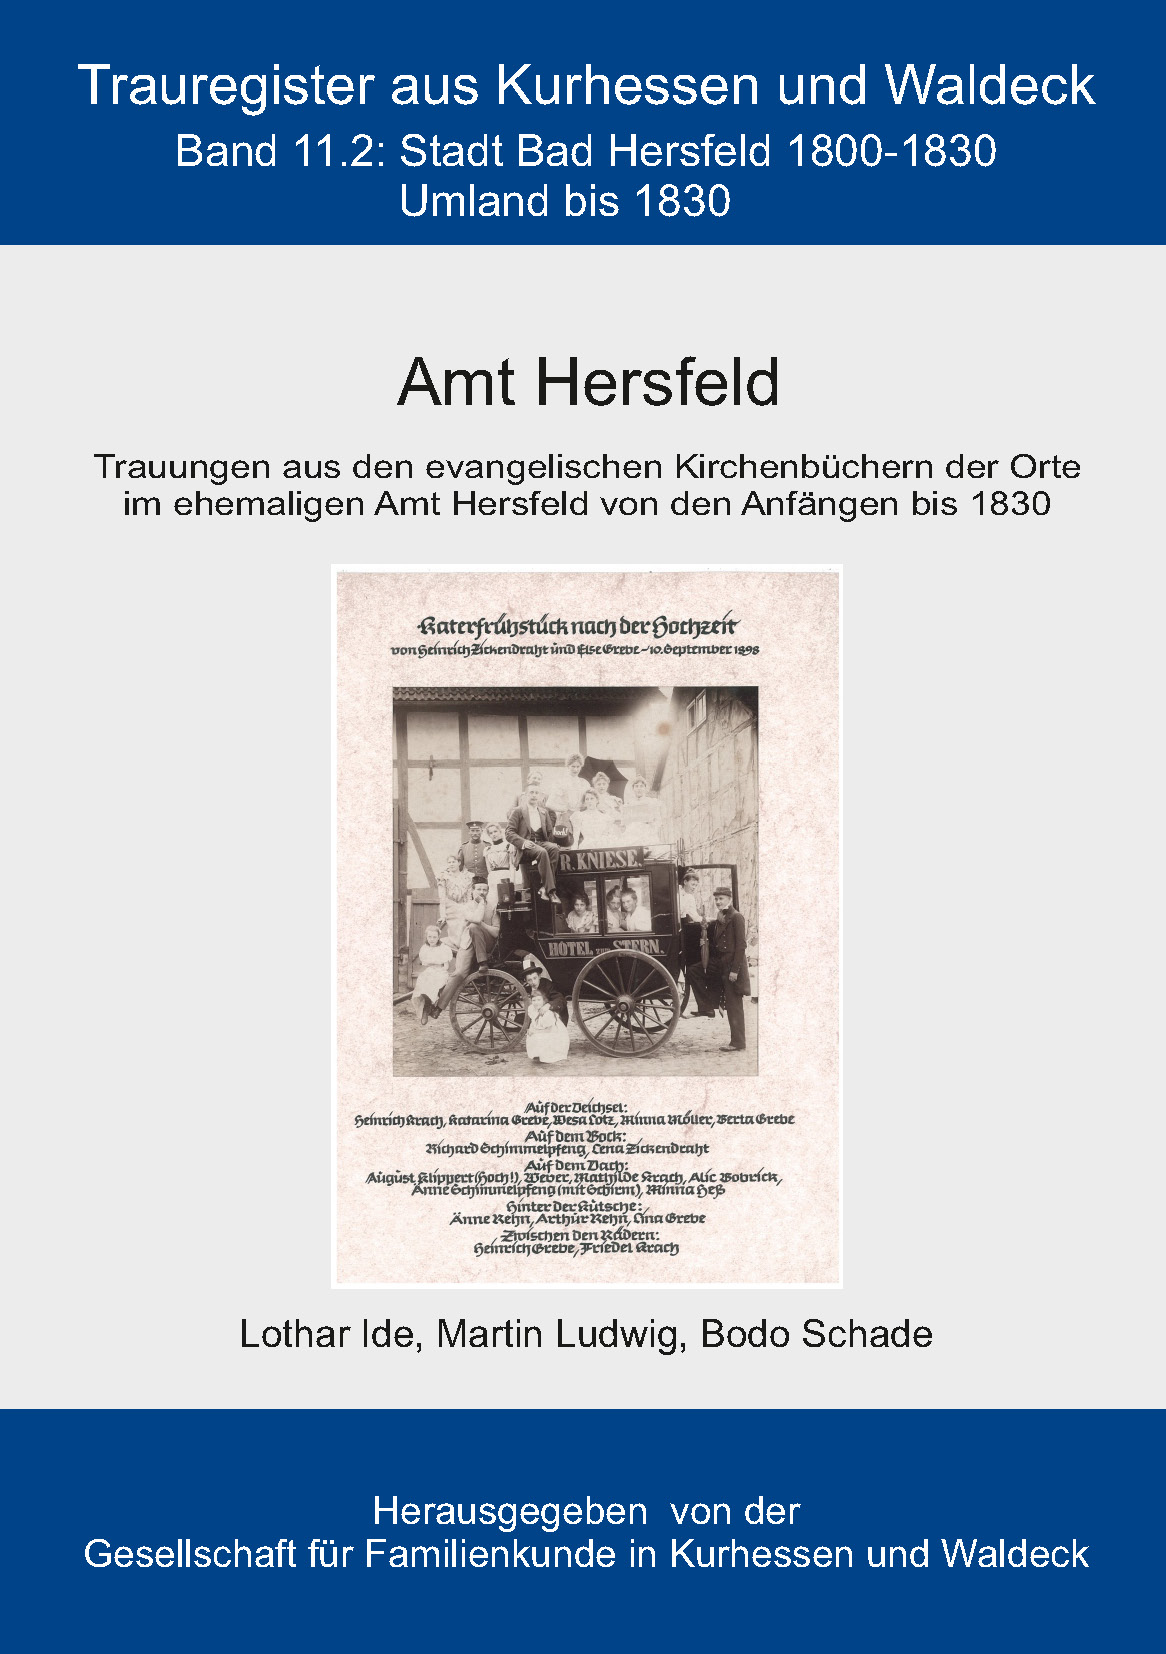 Trauregister aus Kurhessen und Waldeck, Band 11.1 Amt Hersfeld